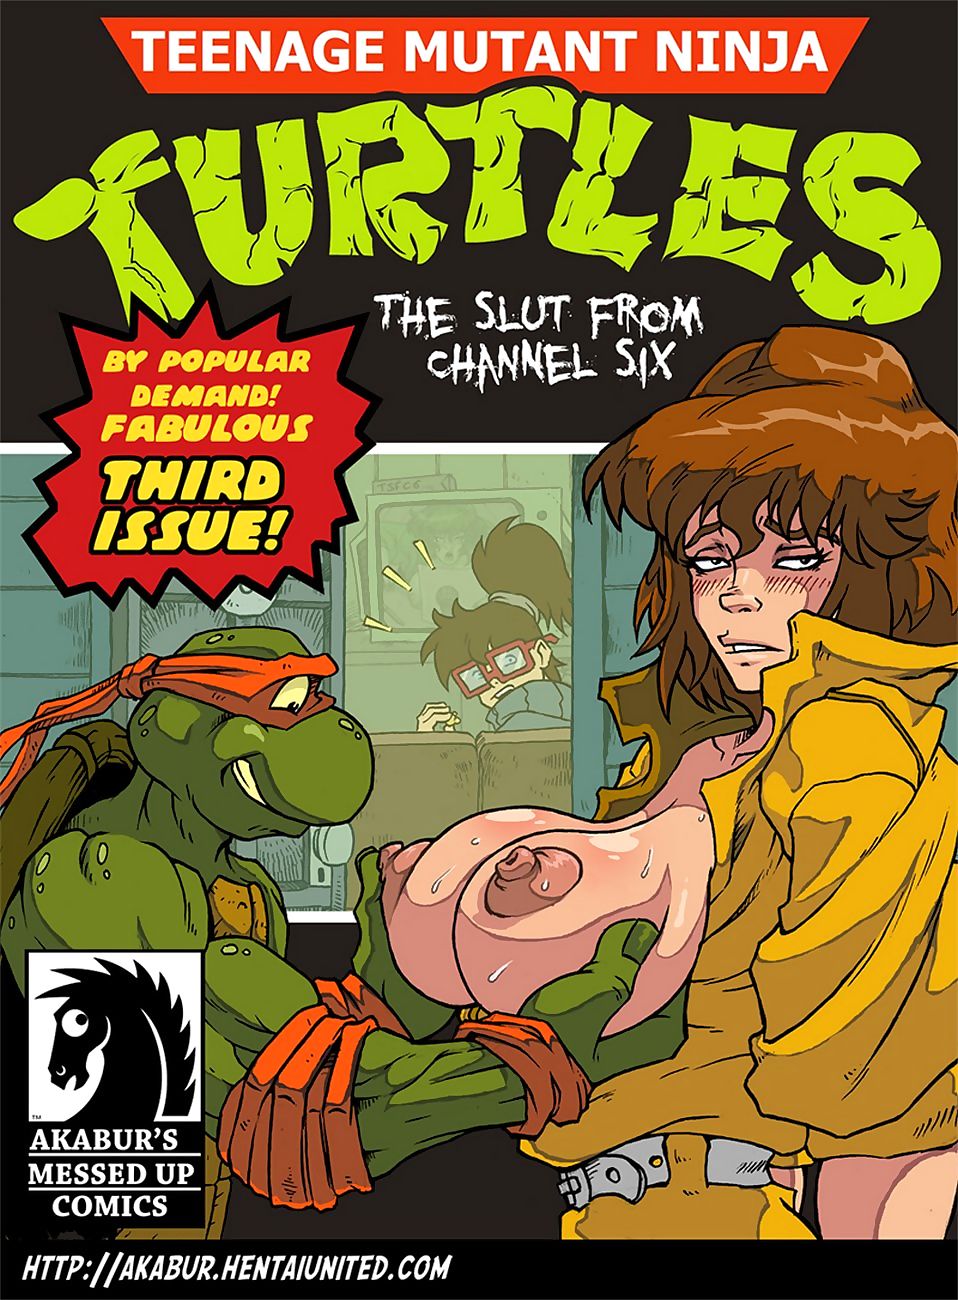 wojownicze żółwie ninja w dziwka Od kanał Sześć page 1